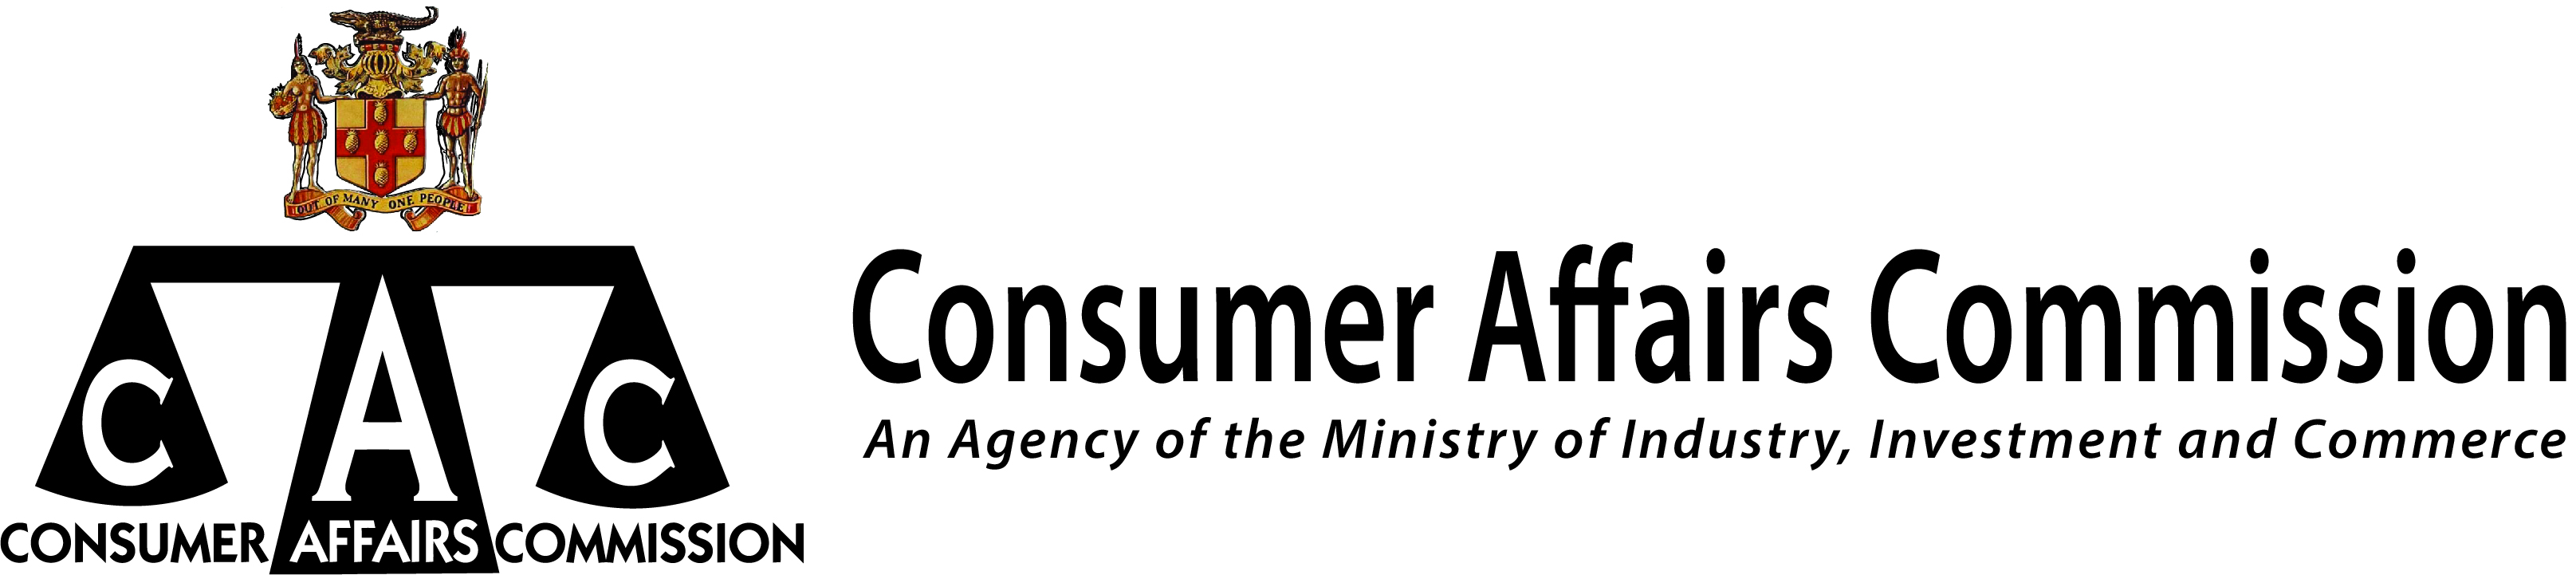 Consumer Affairs Commission